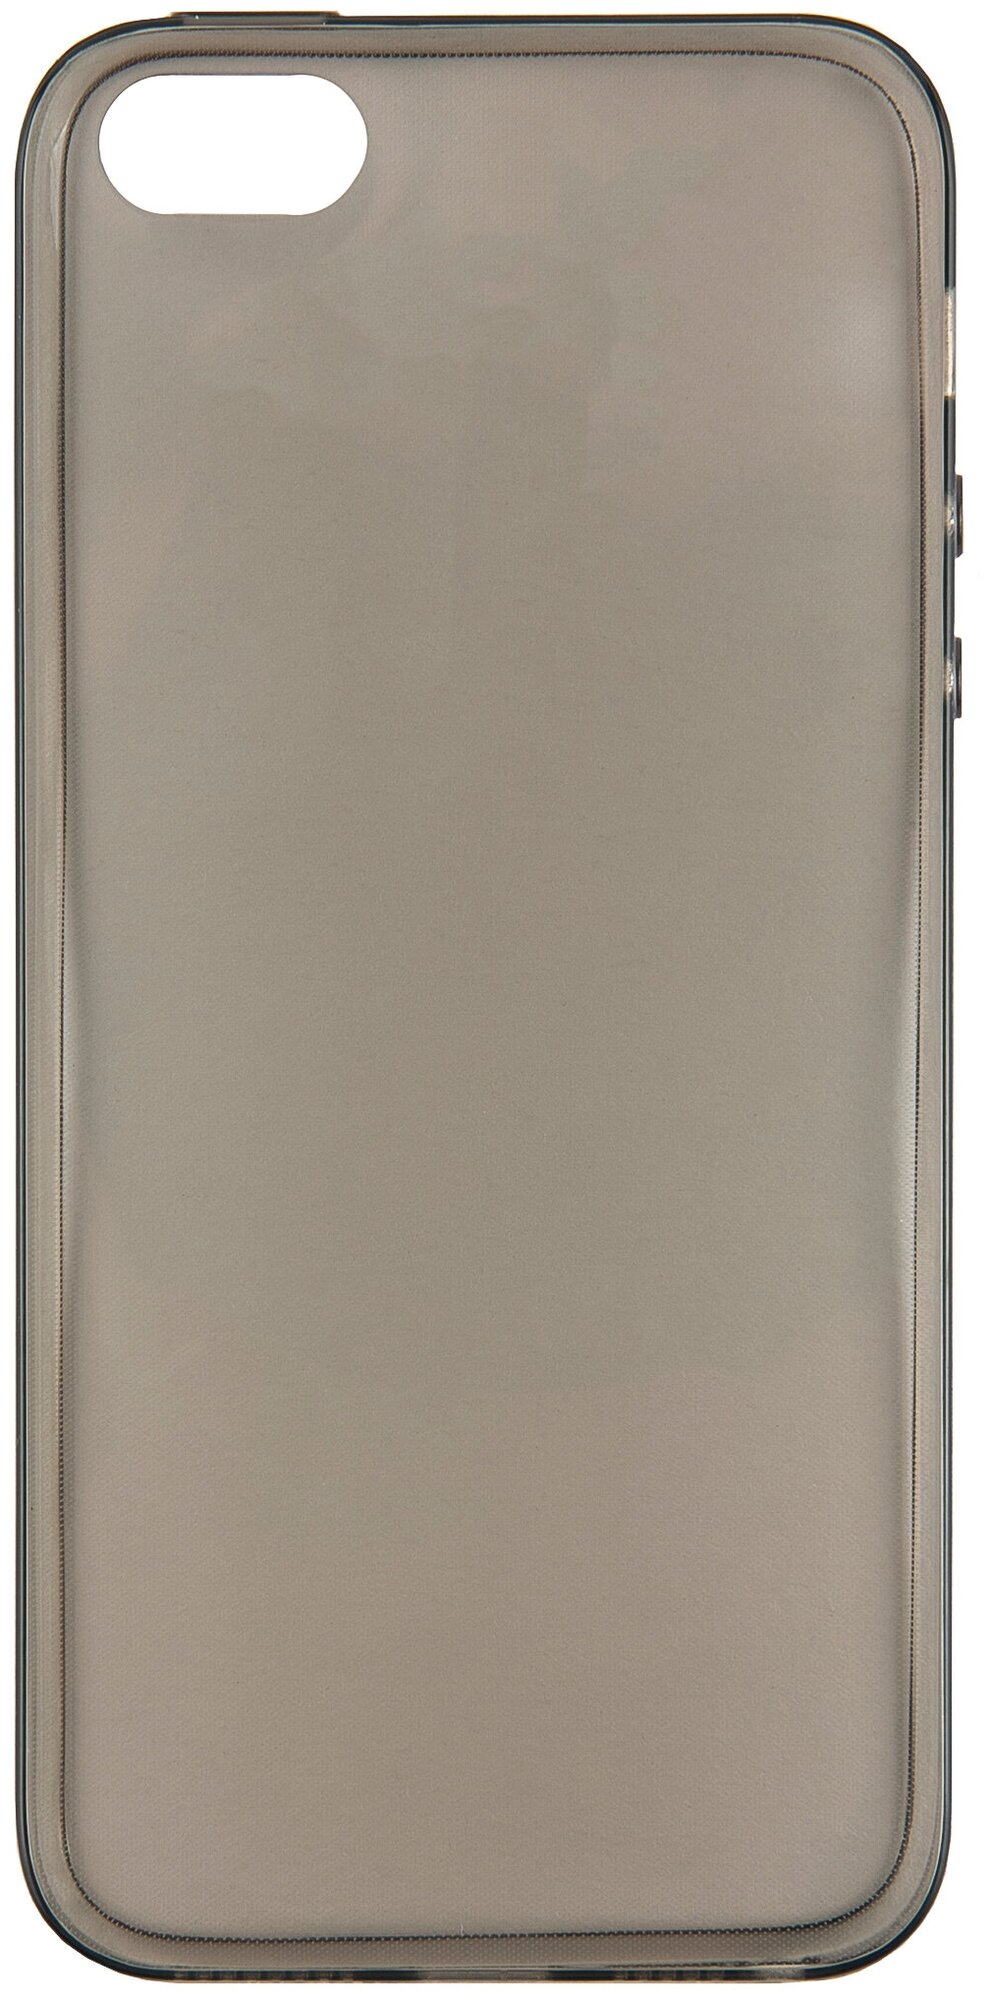 Чехол для iPhone 5/5S/SE / Айфон 5/5S/SE, силиконовая серая накладка